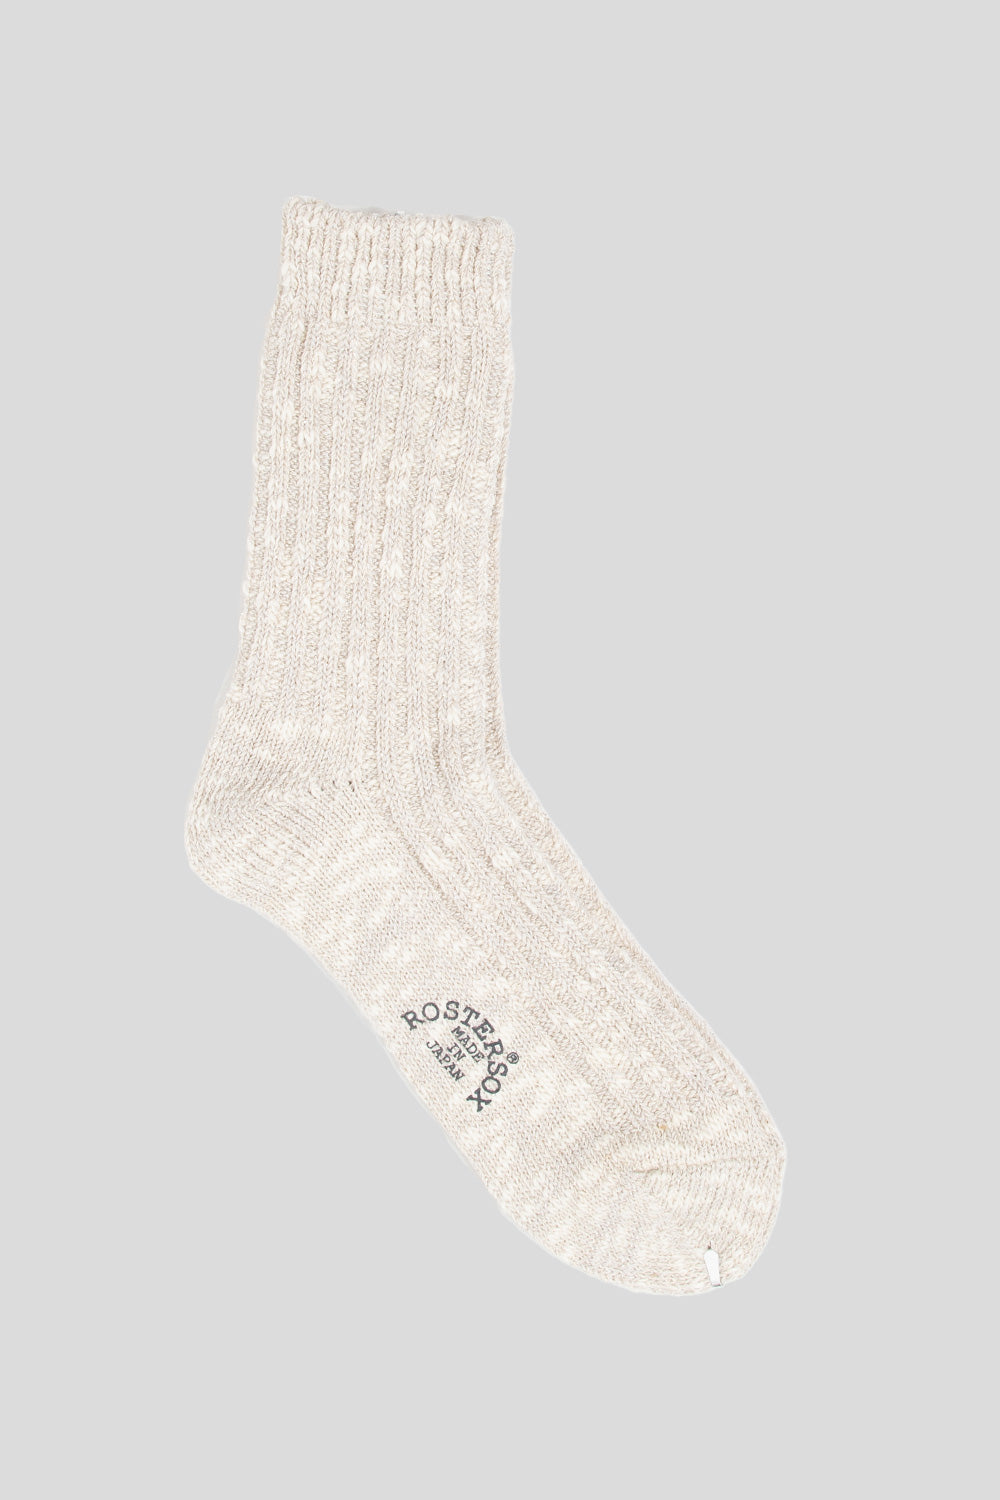 Rostersox P Slub Socks in White